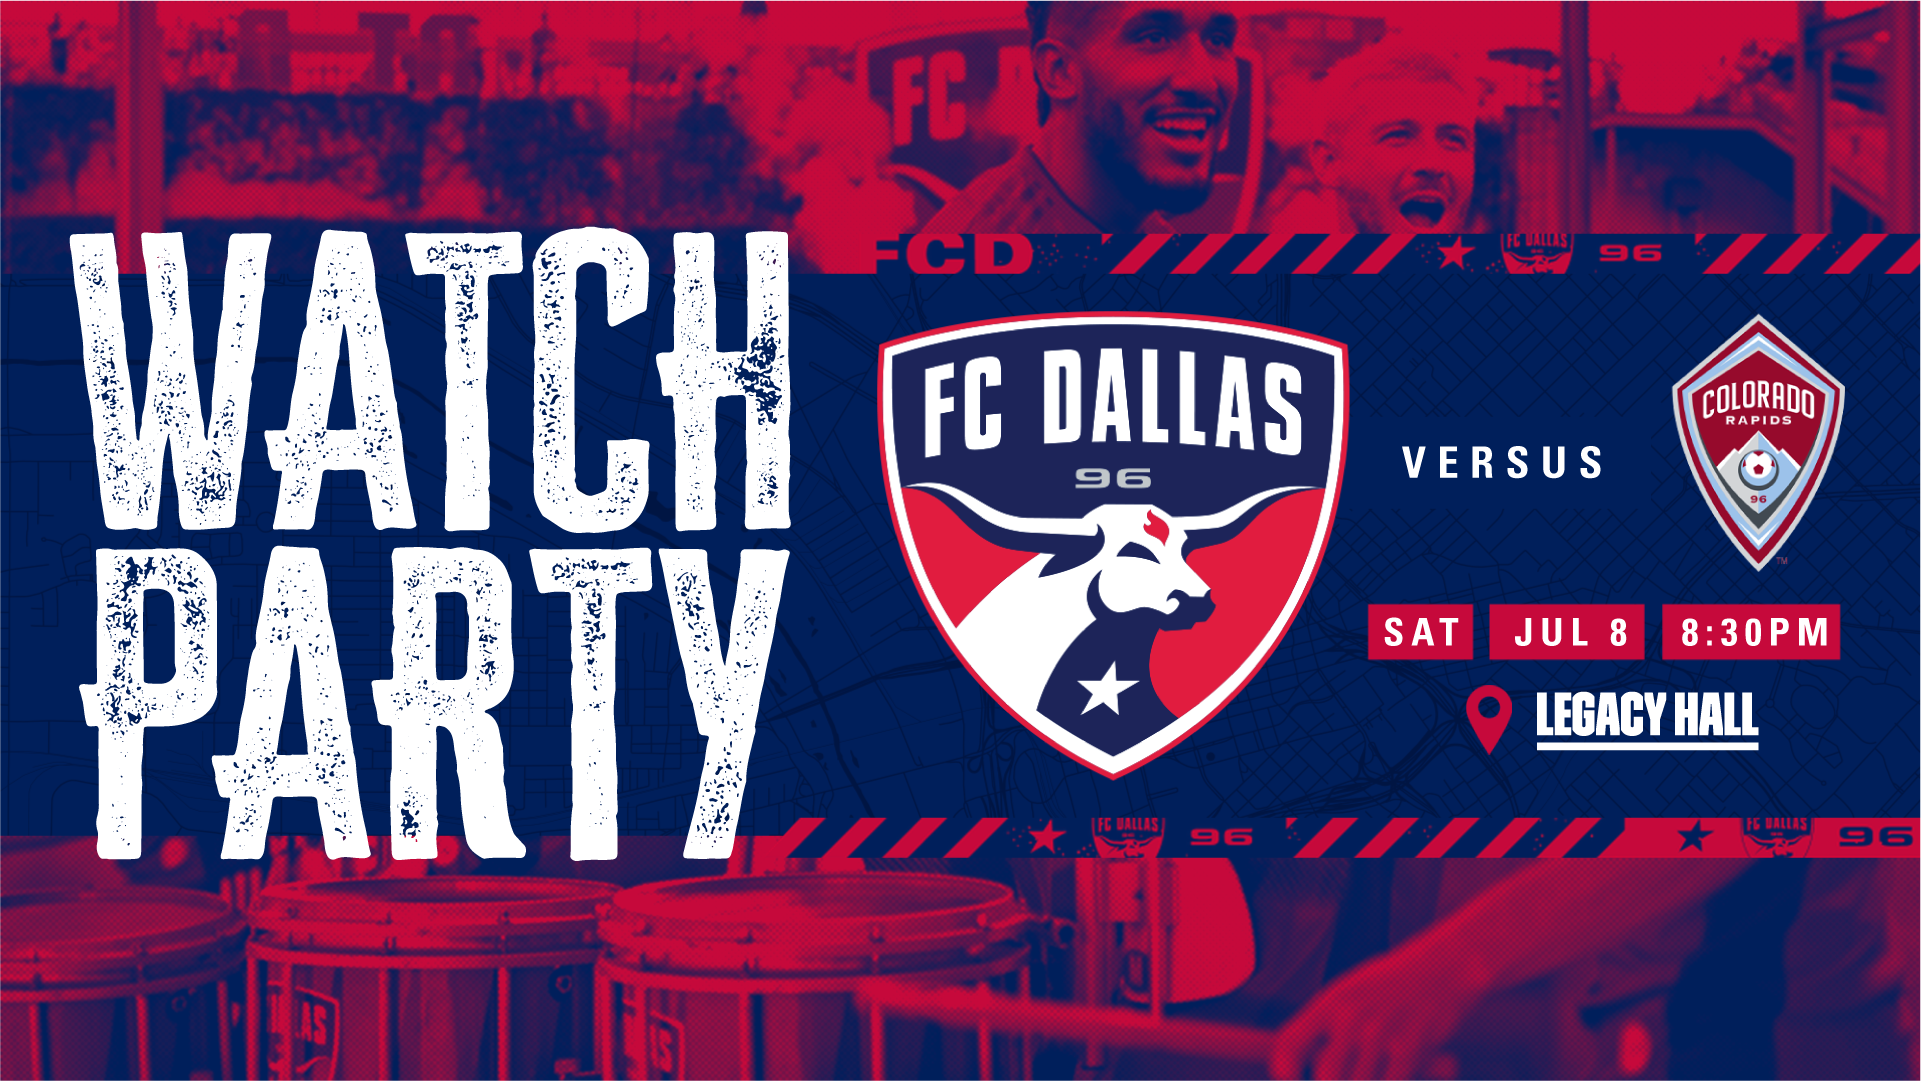 Promo image of FC Dallas VS Colorado Watch Party